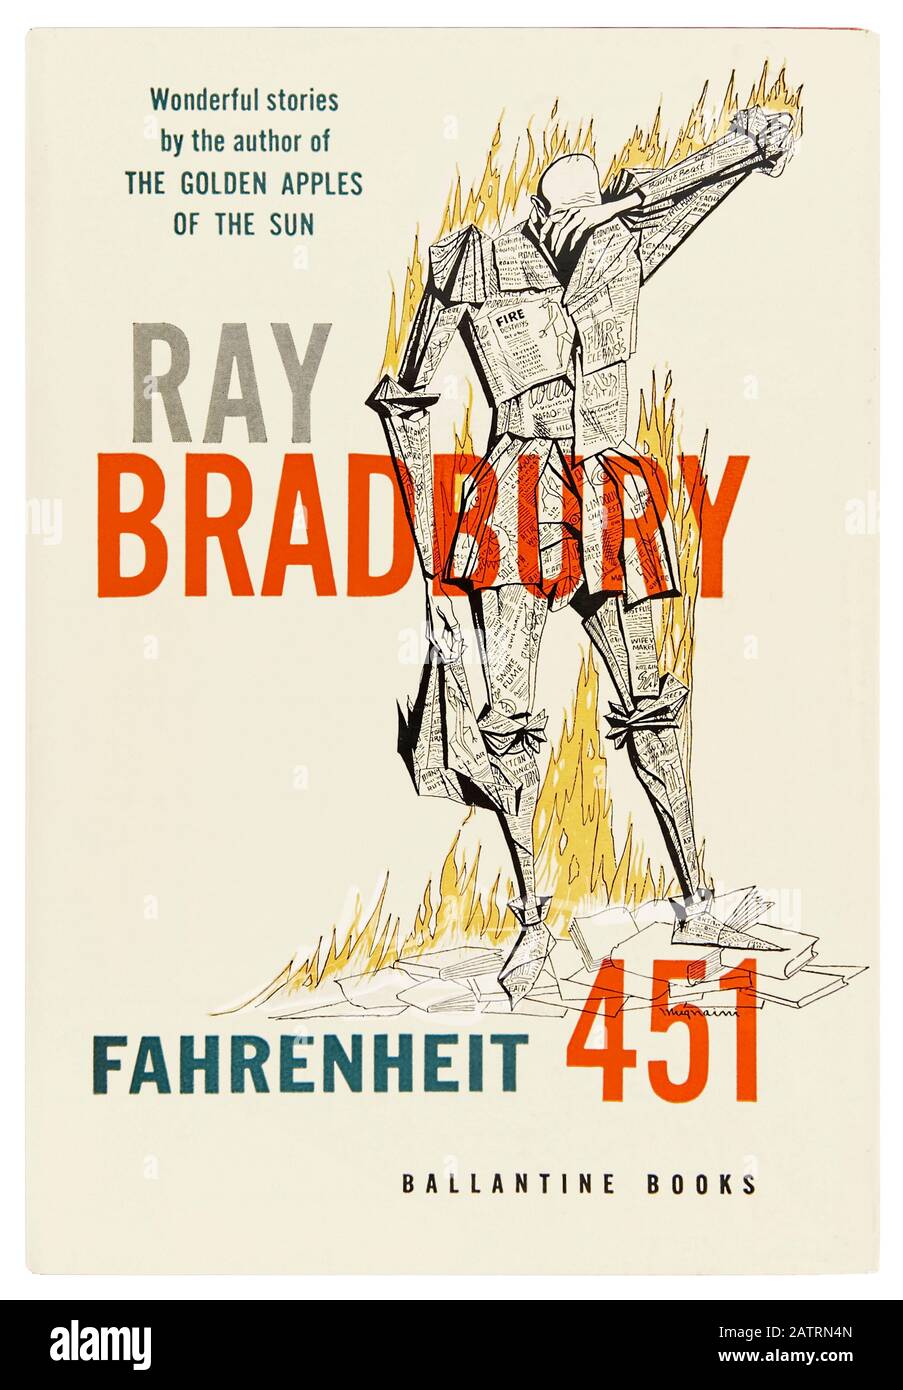 Fahrenheit 451 por Ray Bradbury (1920-2012), una novela distópica sobre Guy Montag, un bombero en una sociedad donde los libros son proscritos y destruidos por los bomberos. Fotografía de la portada de la primera edición de 1953 con una ilustración de Joe Mugnaini (1912-1992). Foto de stock